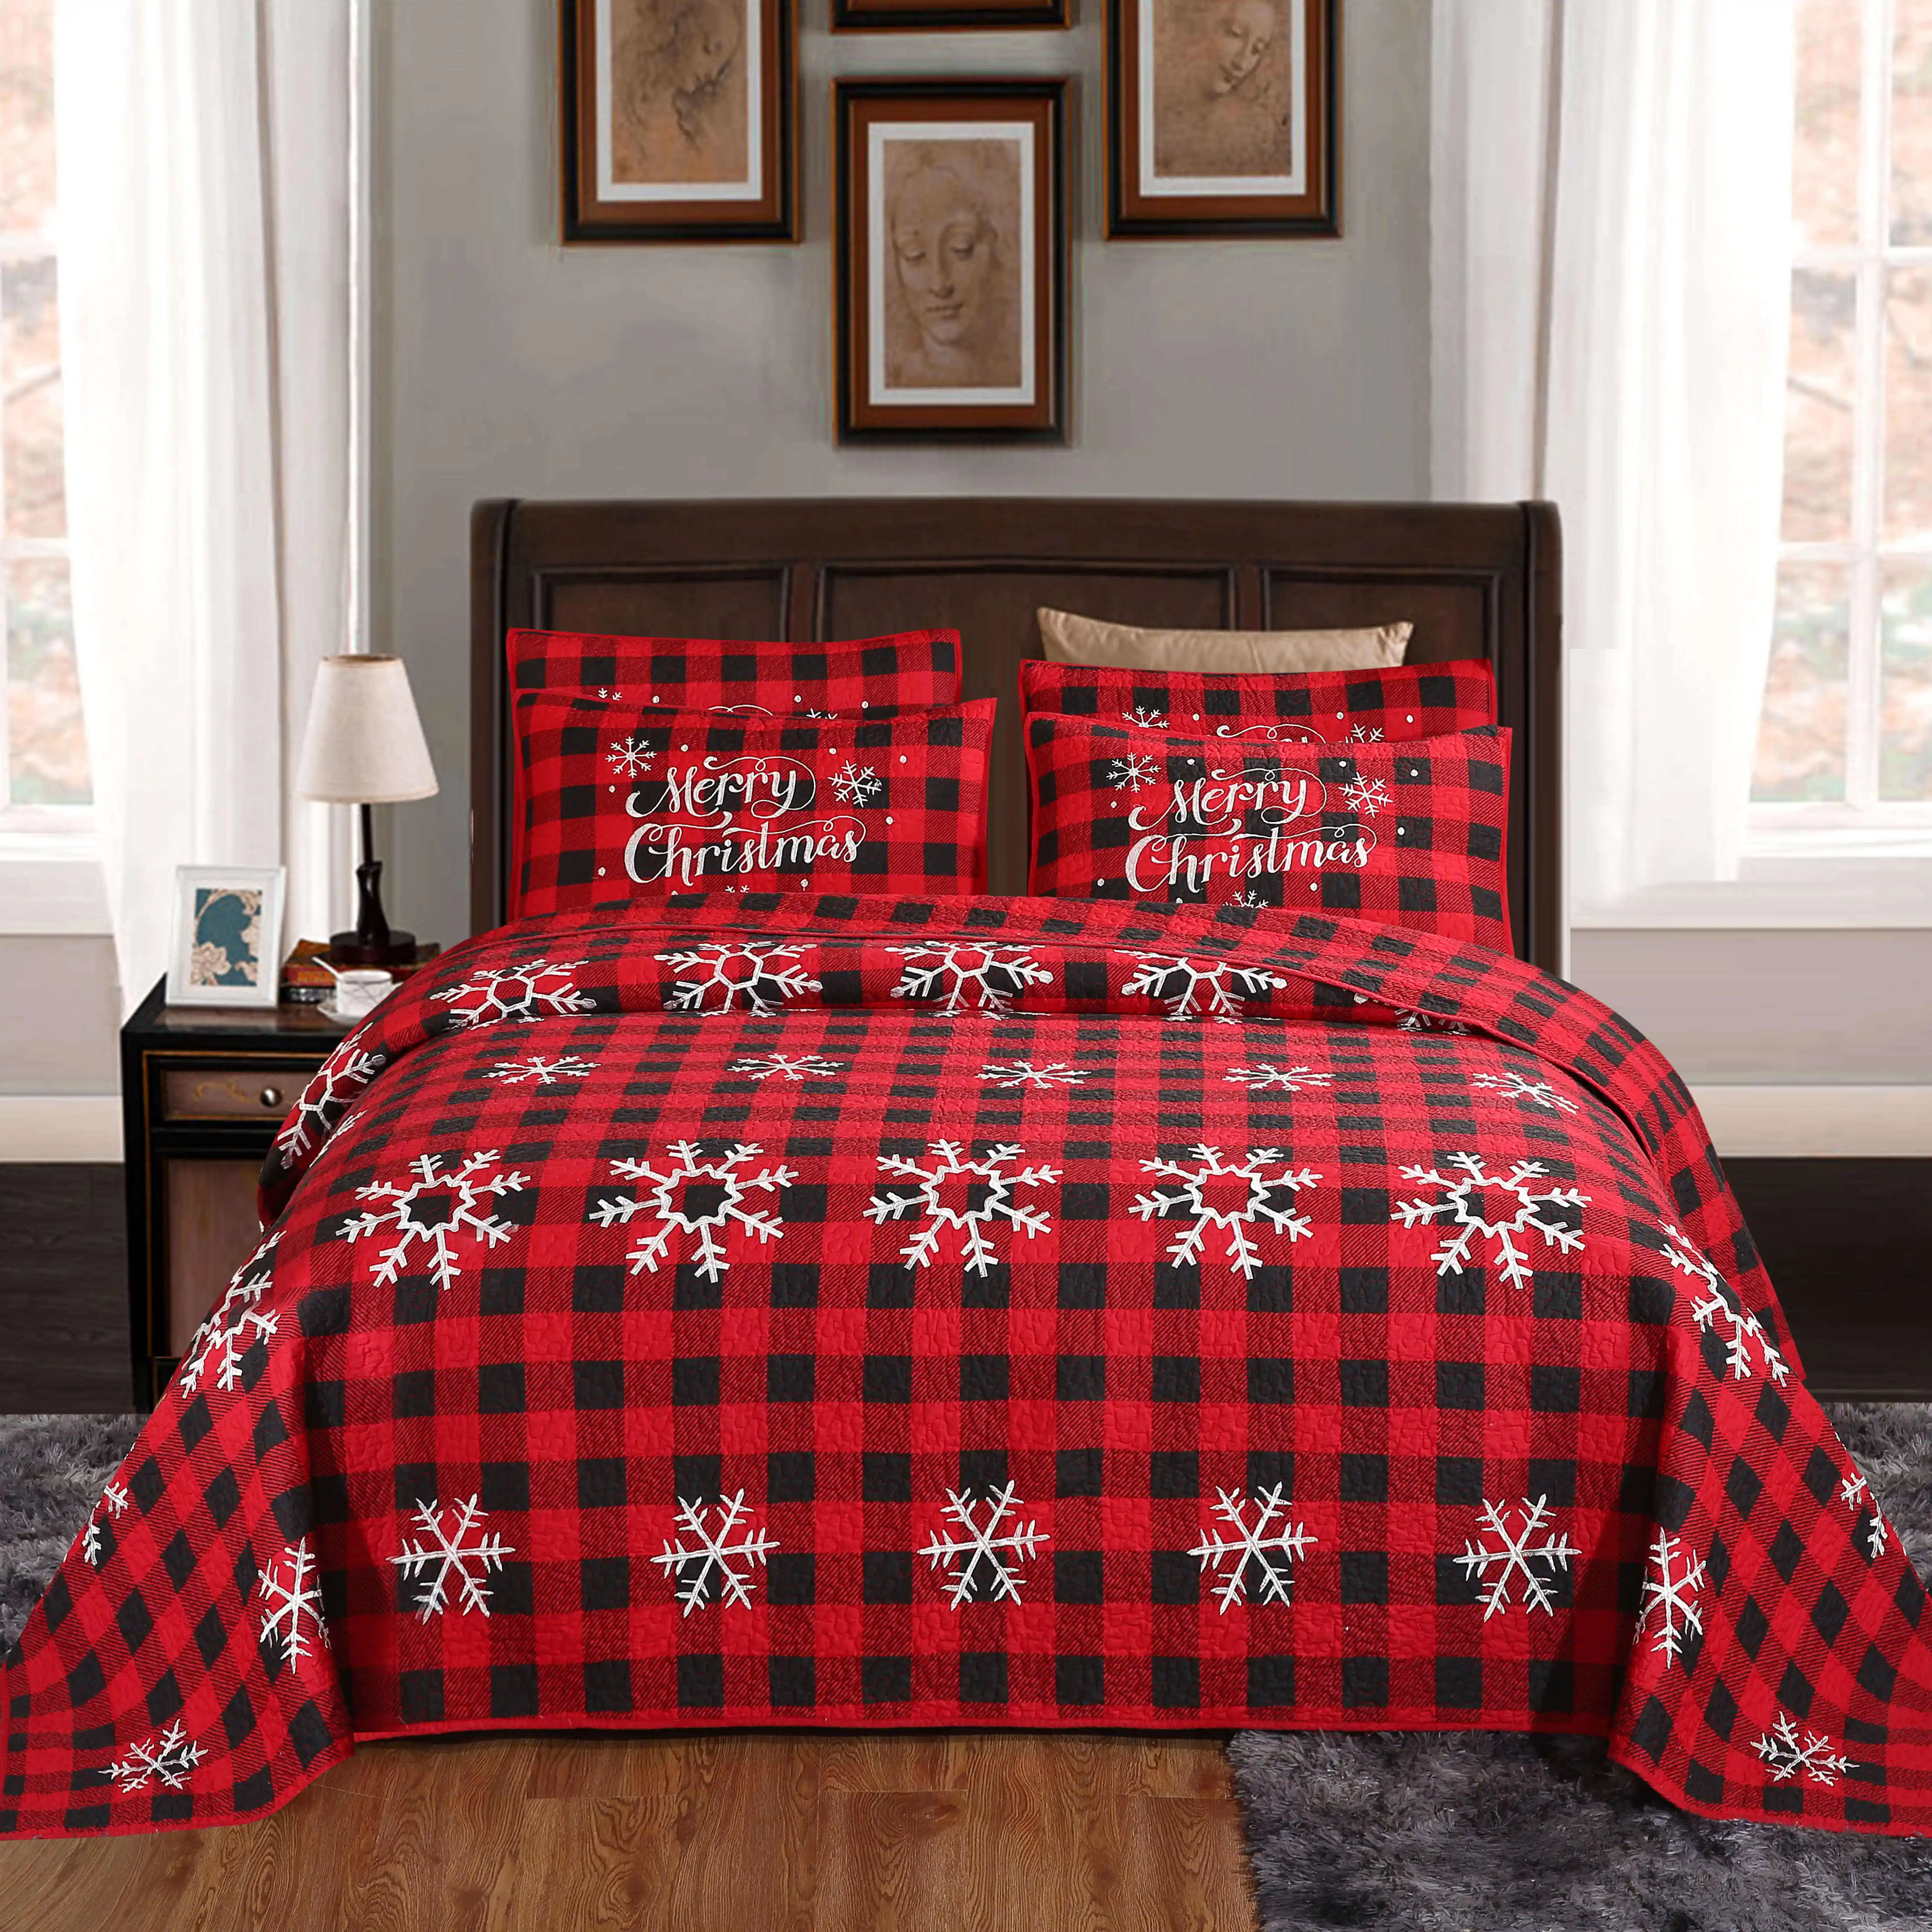 赤いクリスマスコレクション寝具印刷ベッドカバーセット高級3ピースクイーンベッドカバーホリデーホーム用